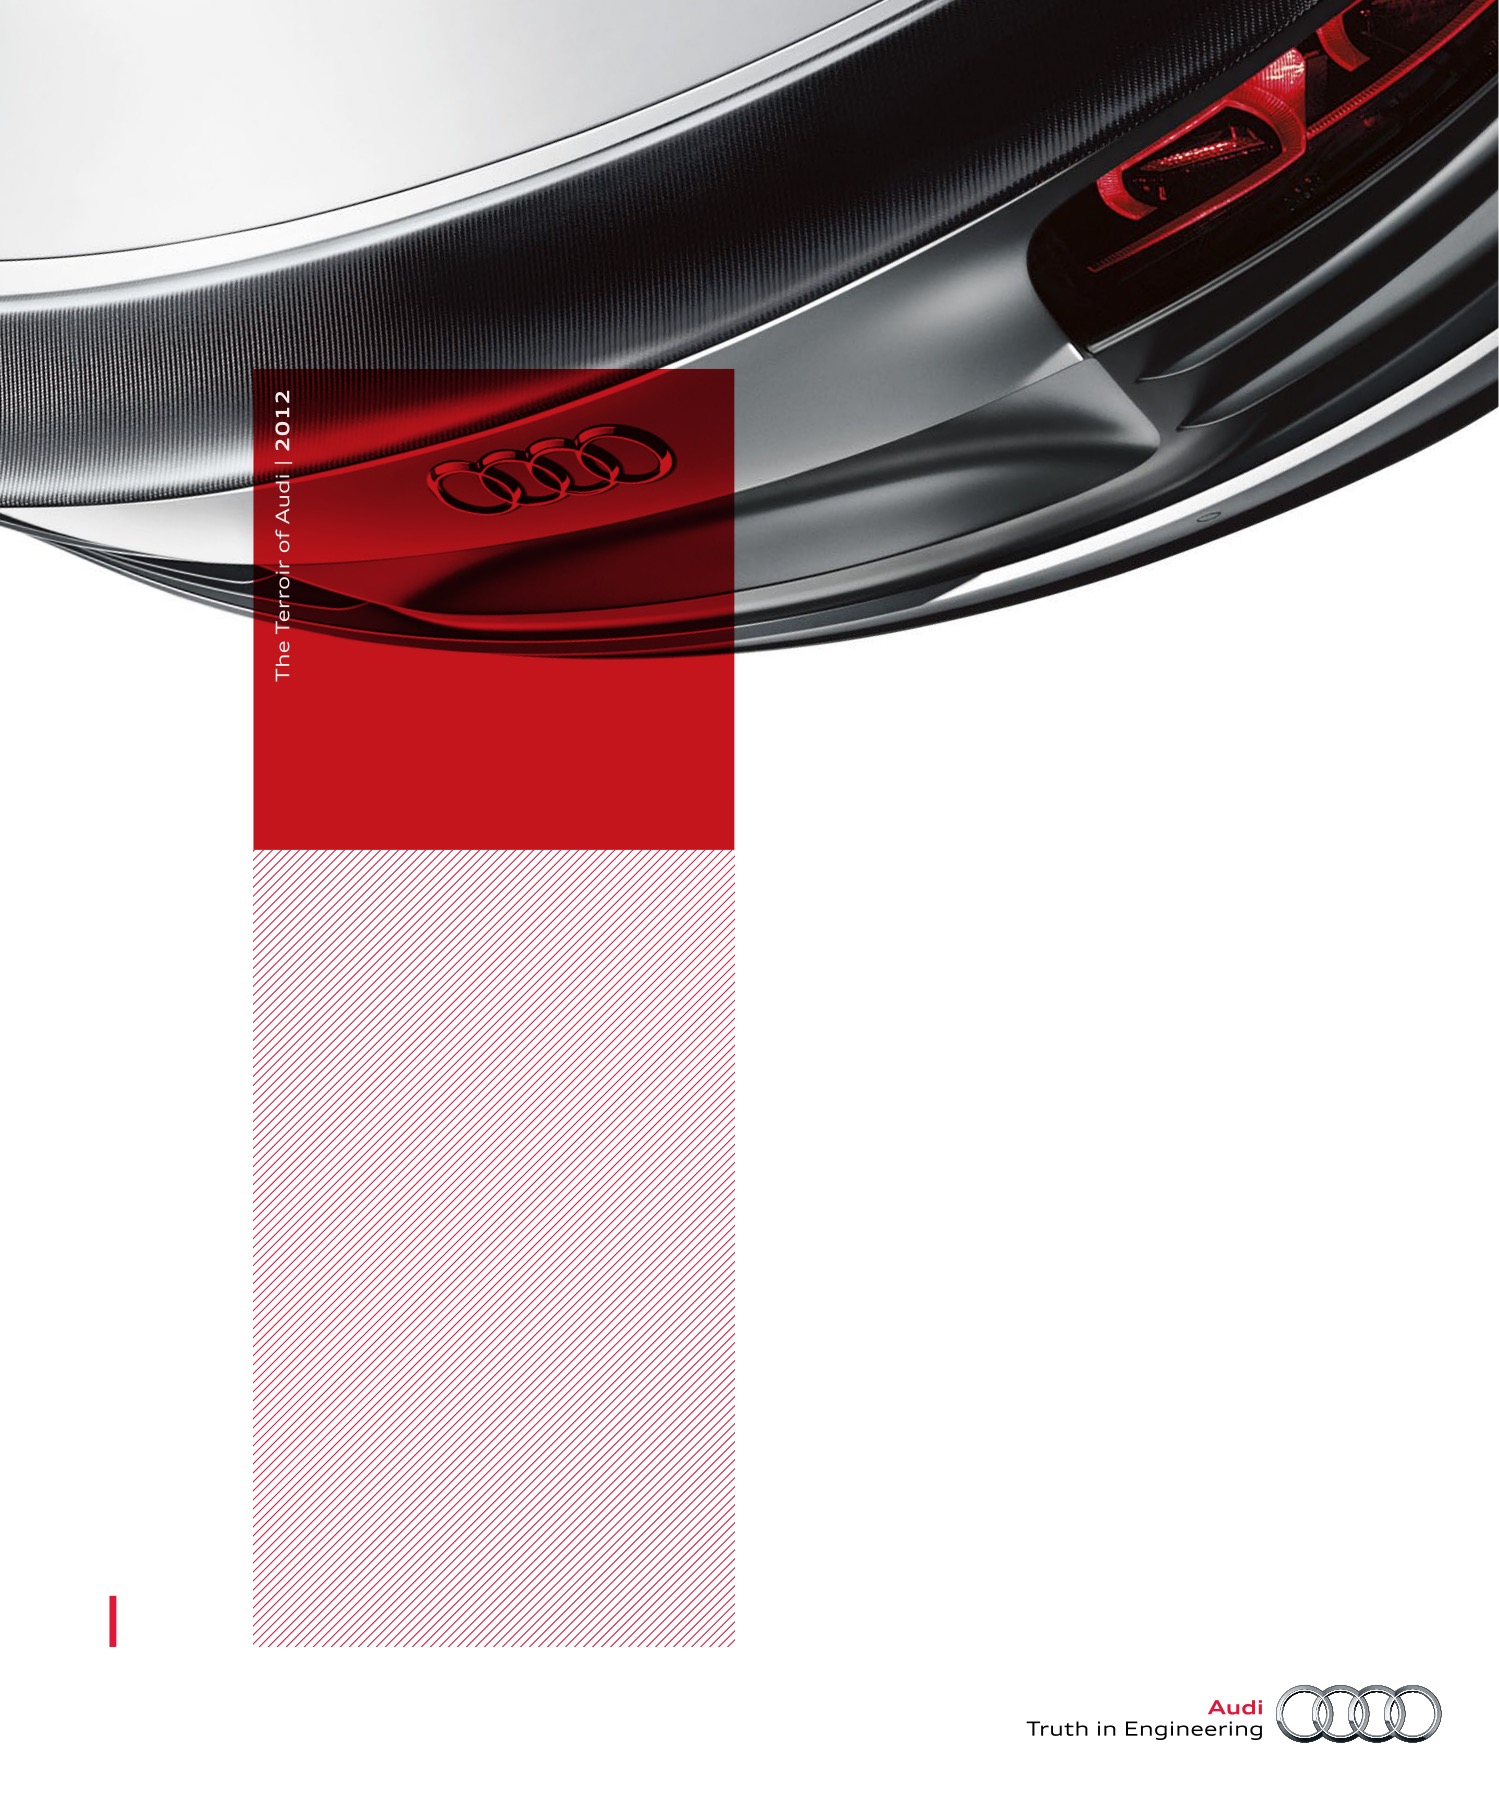 2012 Audi Full Line Brochure